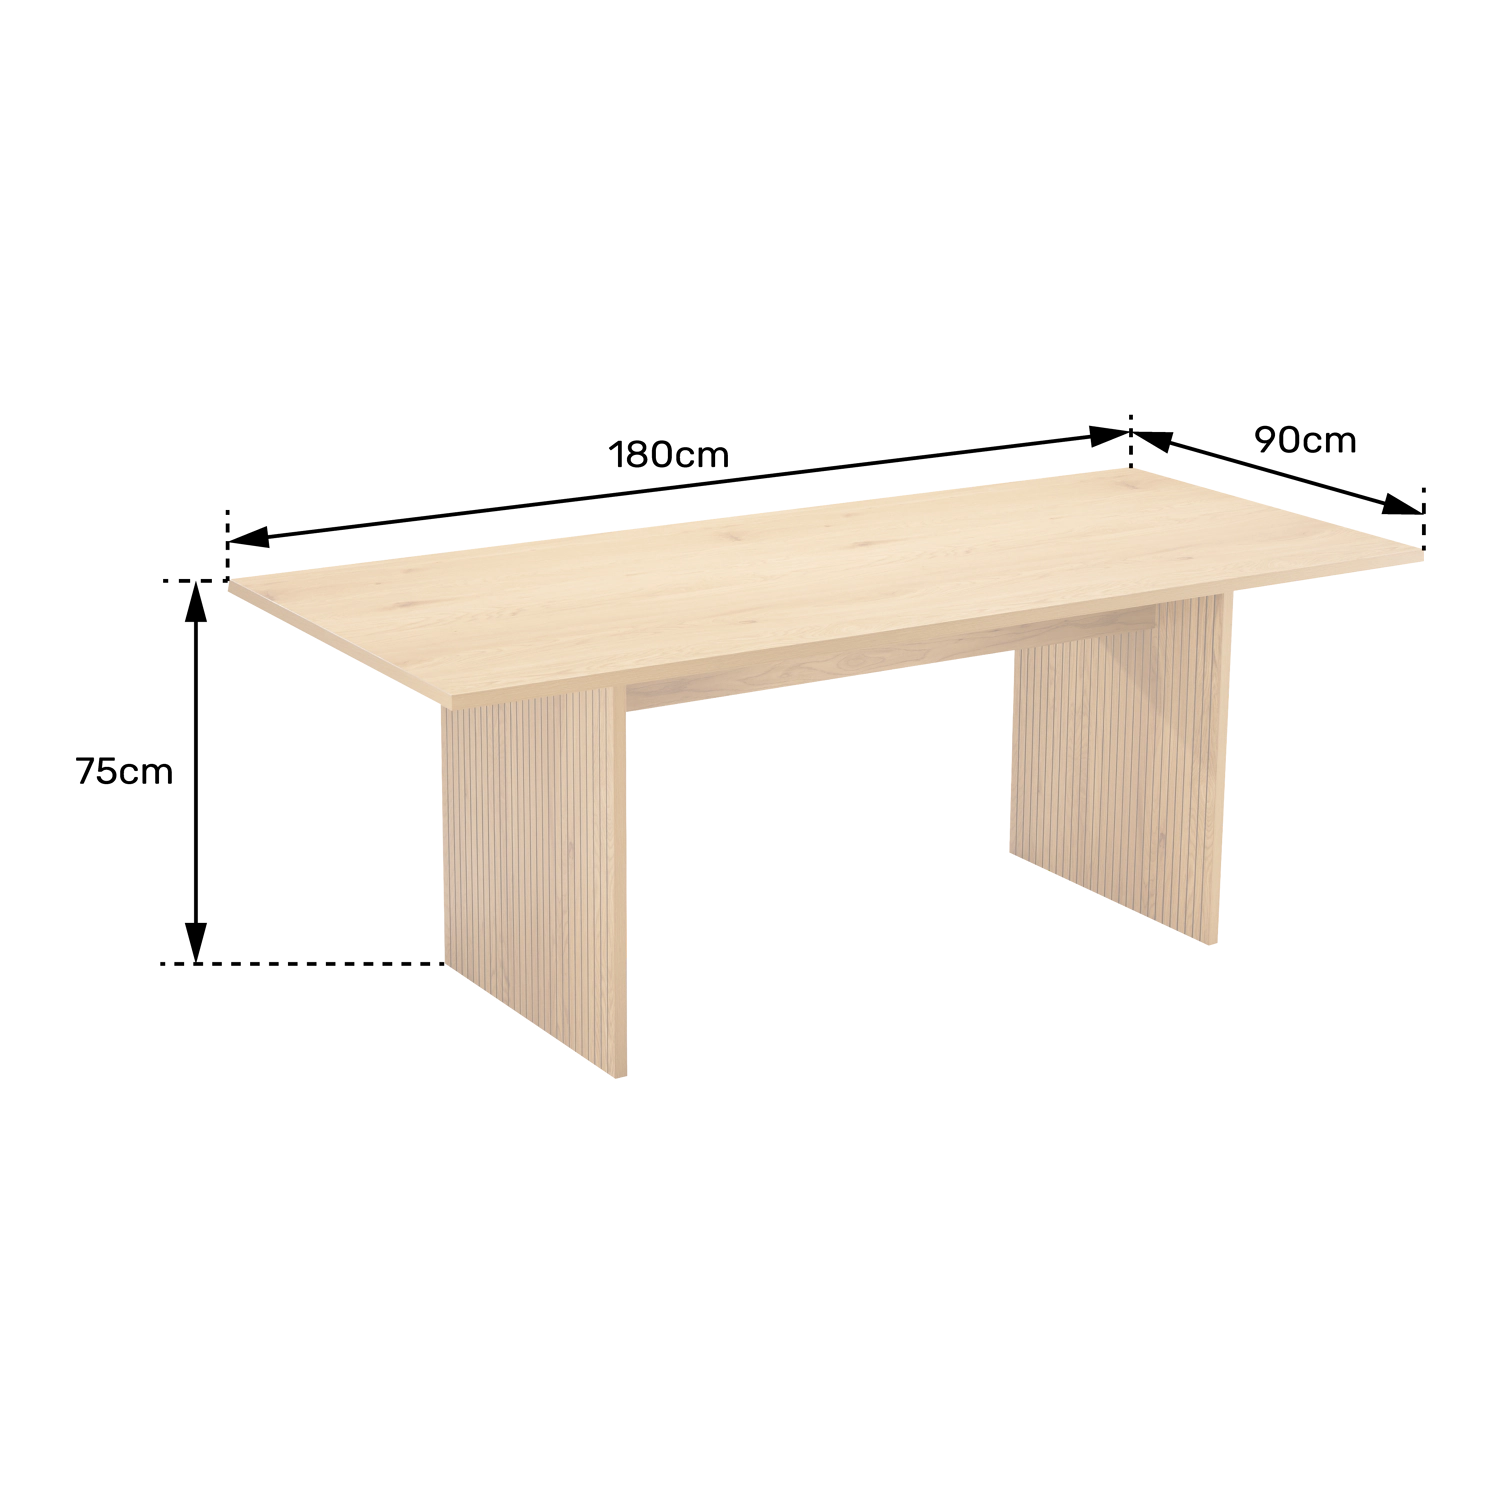 Mesa de madeira de estilo escandinavo 180cm ALMA